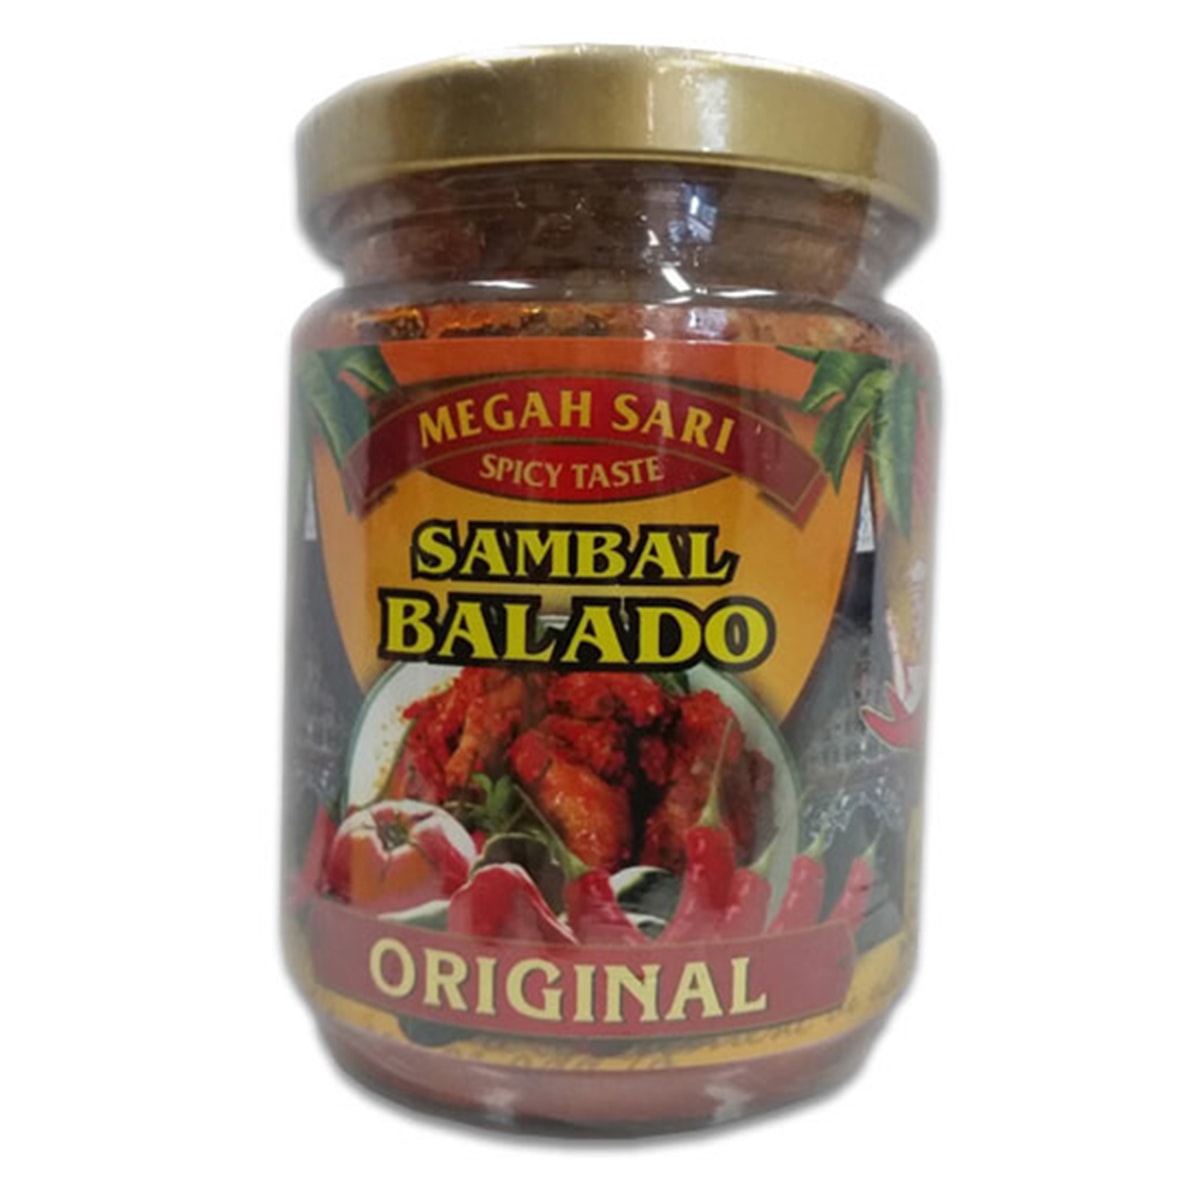 Buy Megah Sari Sambal Balado (Original) - 250 ml